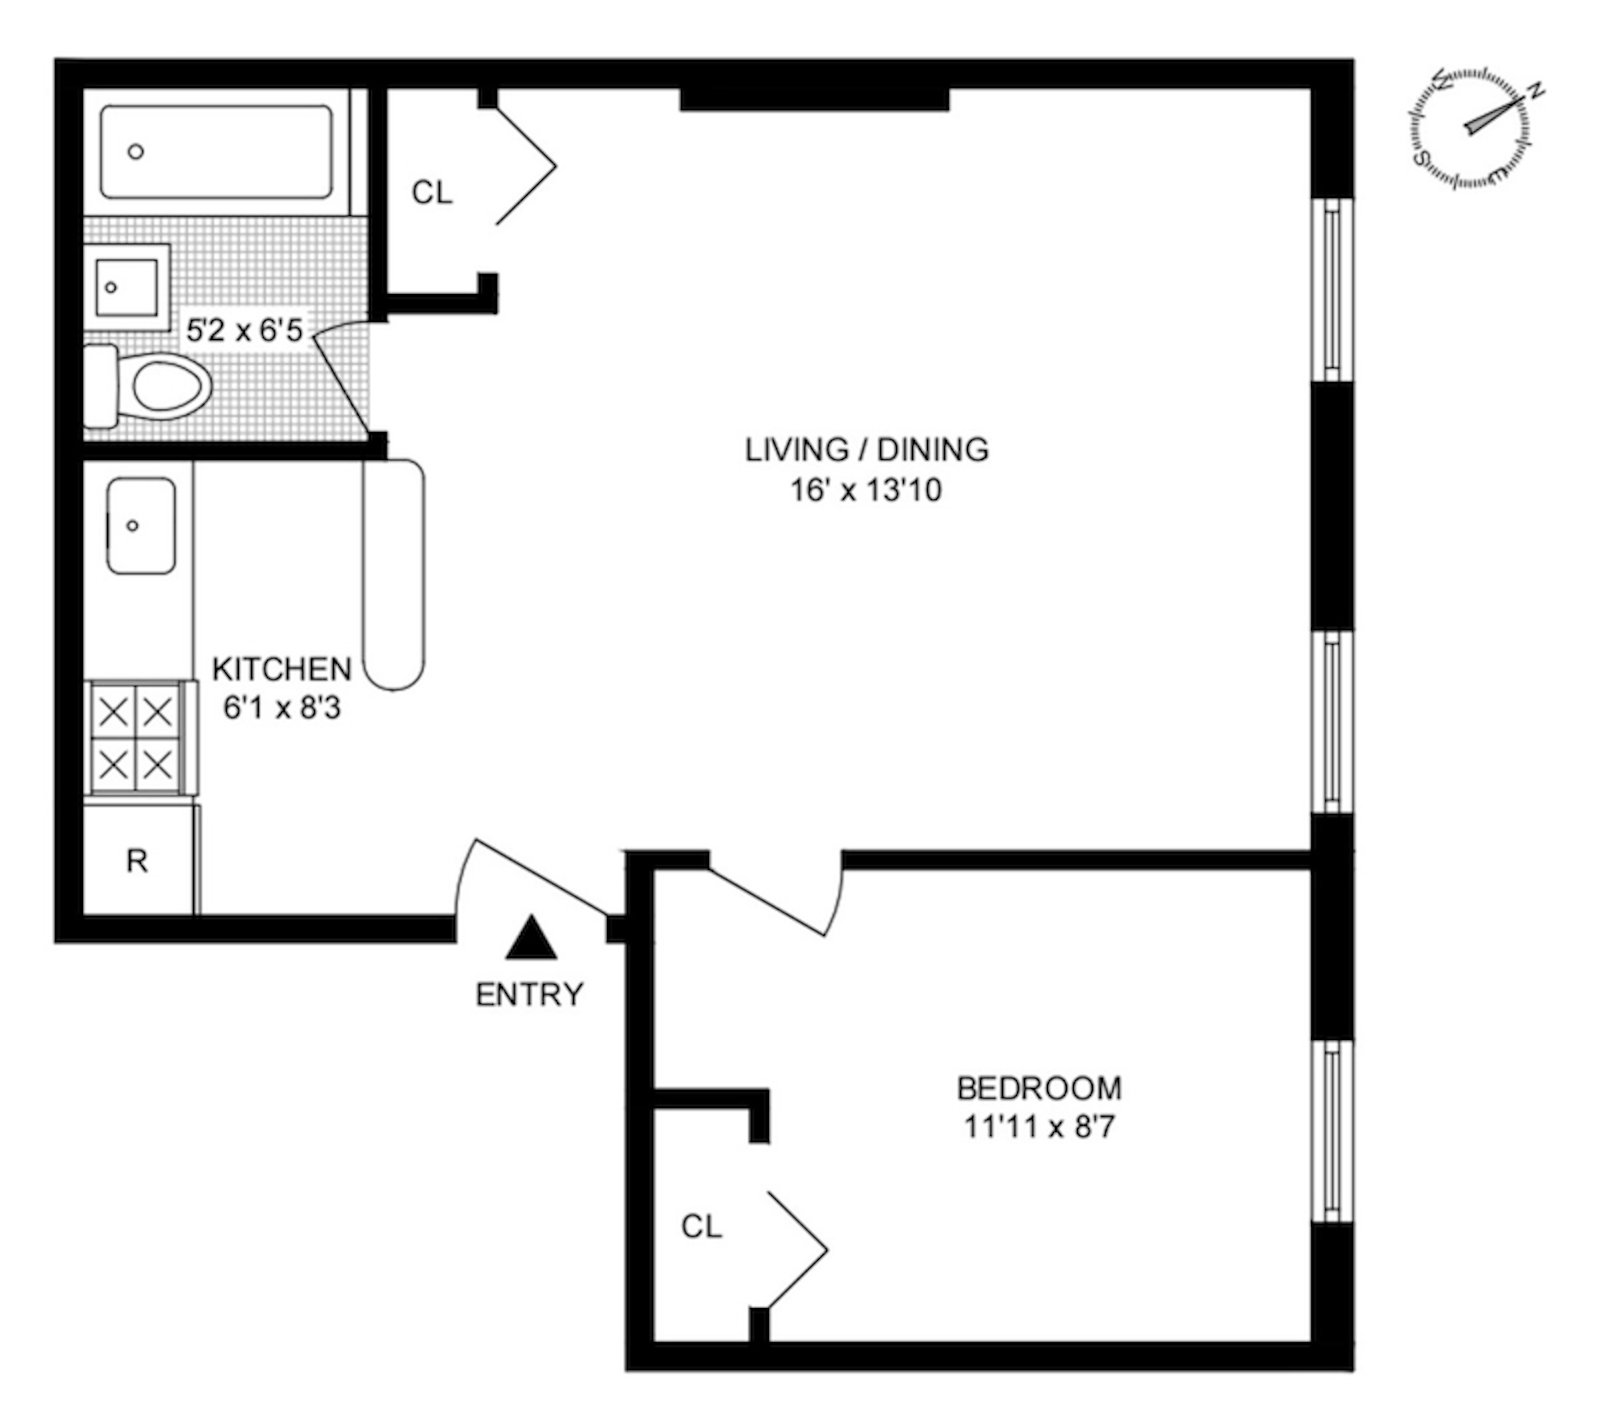 Floorplan for 151 Remsen Street, 5F